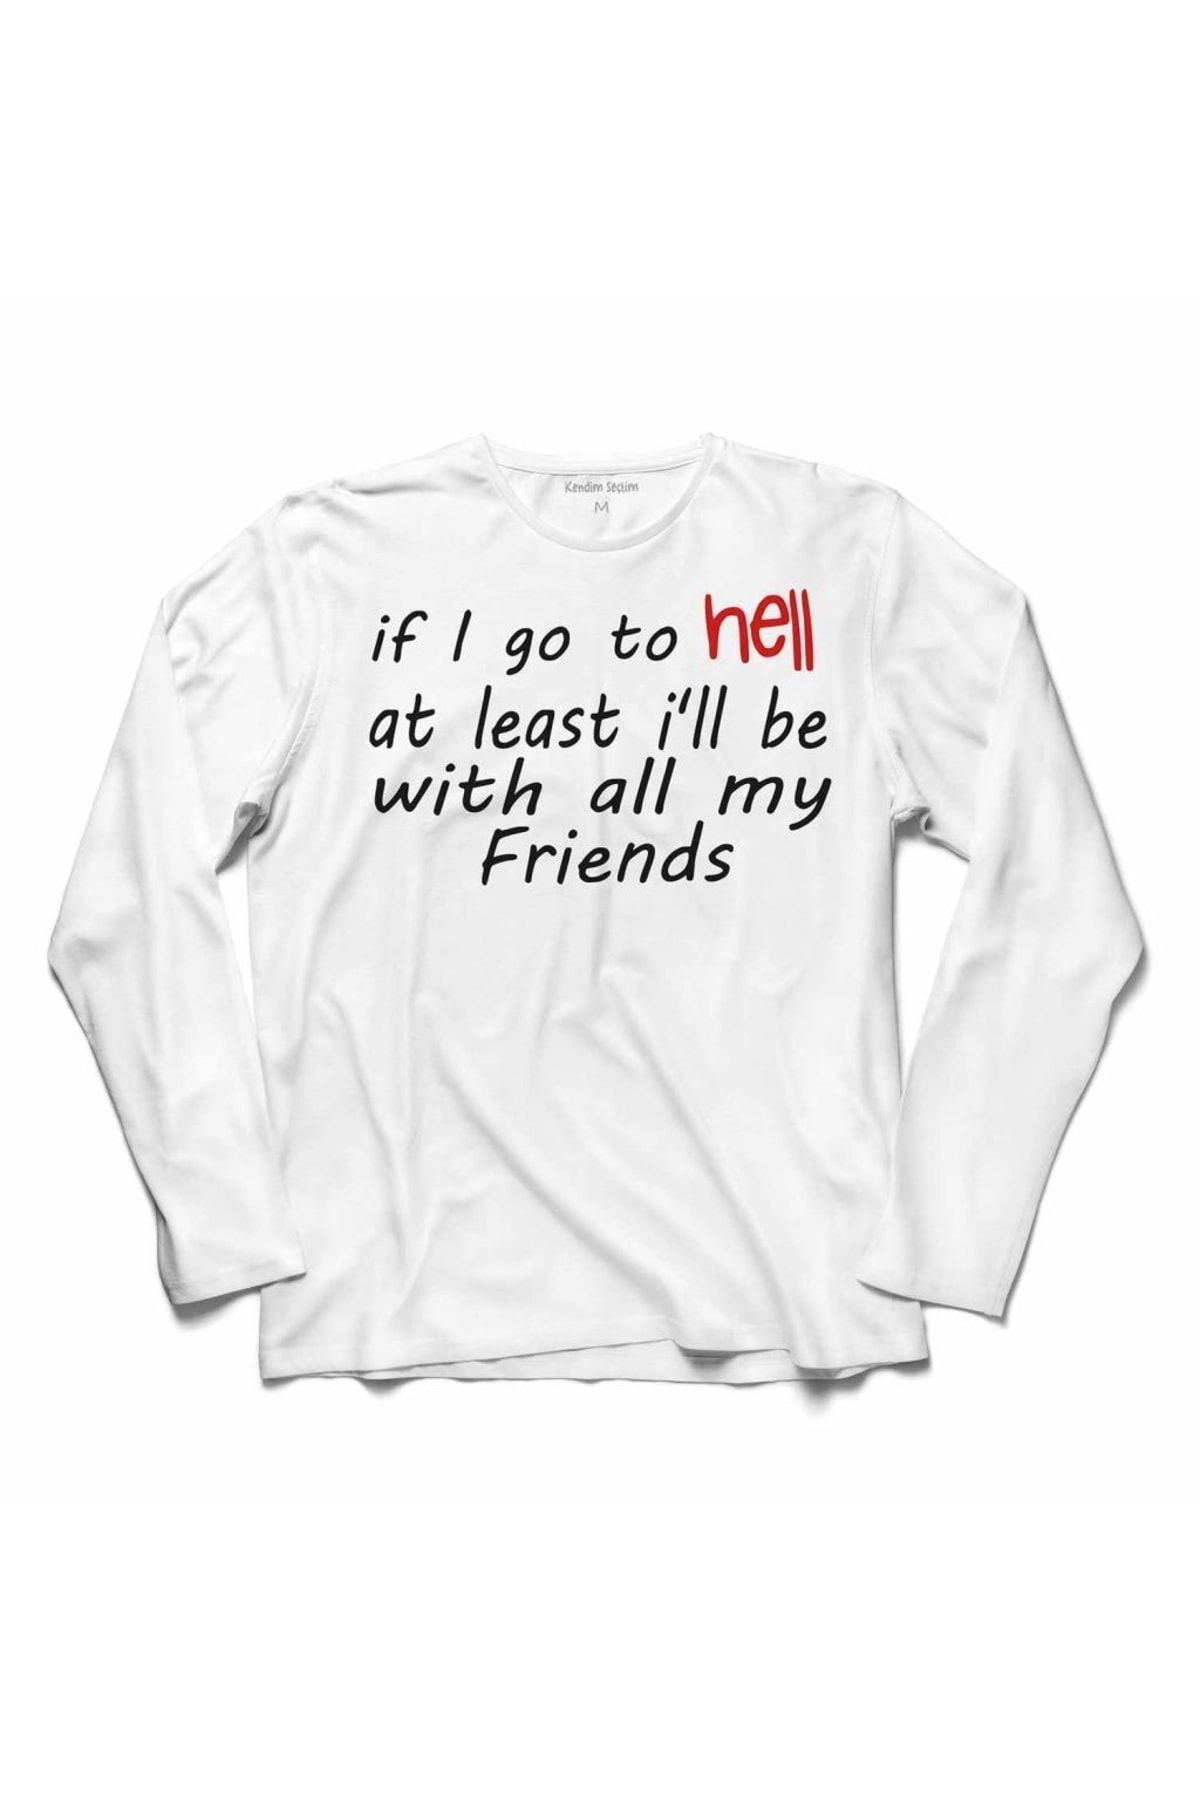 Kendim Seçtim Arkadaşlık Dostluk Frıends Seninle Cehenneme Gelirim Tişörtü The Hell Unısex Baskılı Tişört